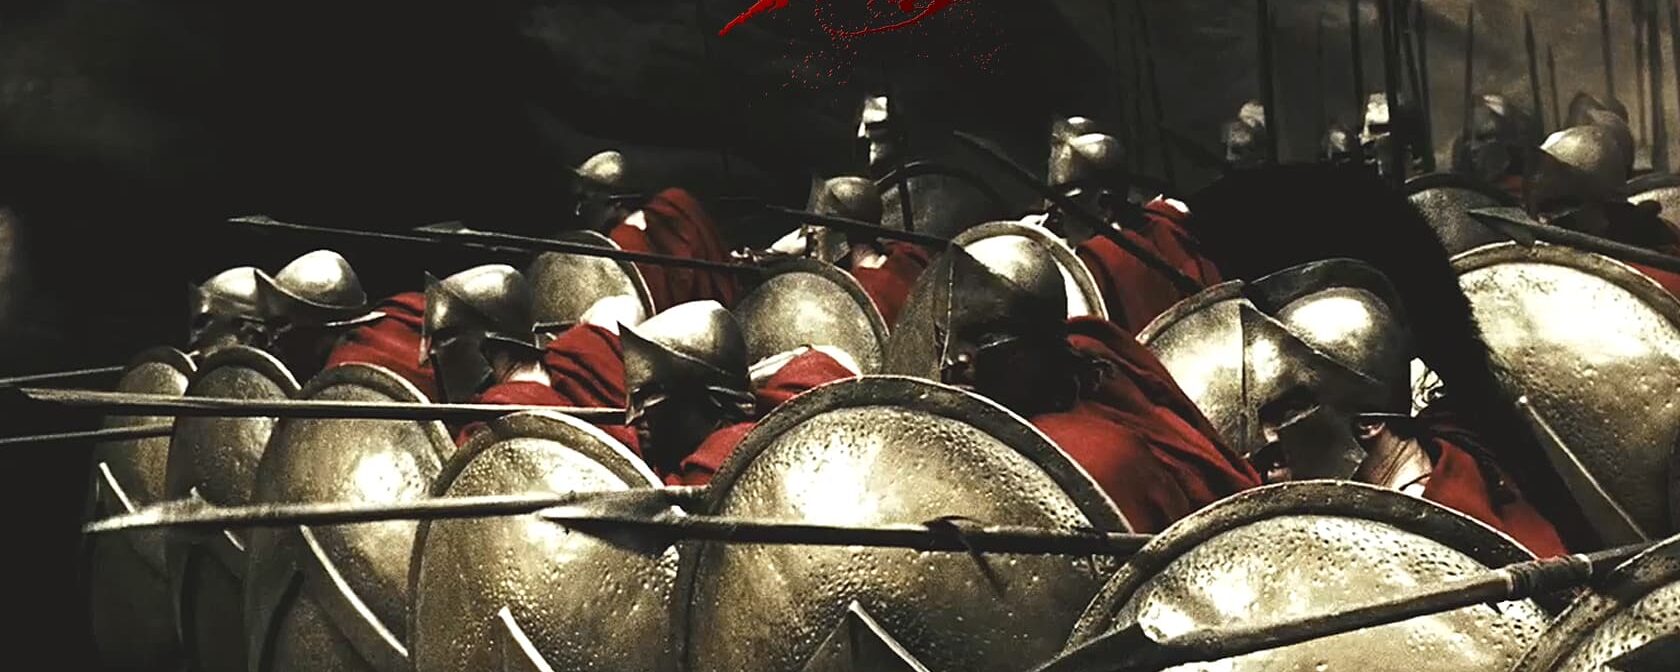 Filme “300”: O Que os Espartanos Têm a Ver Com a Sua Vida?